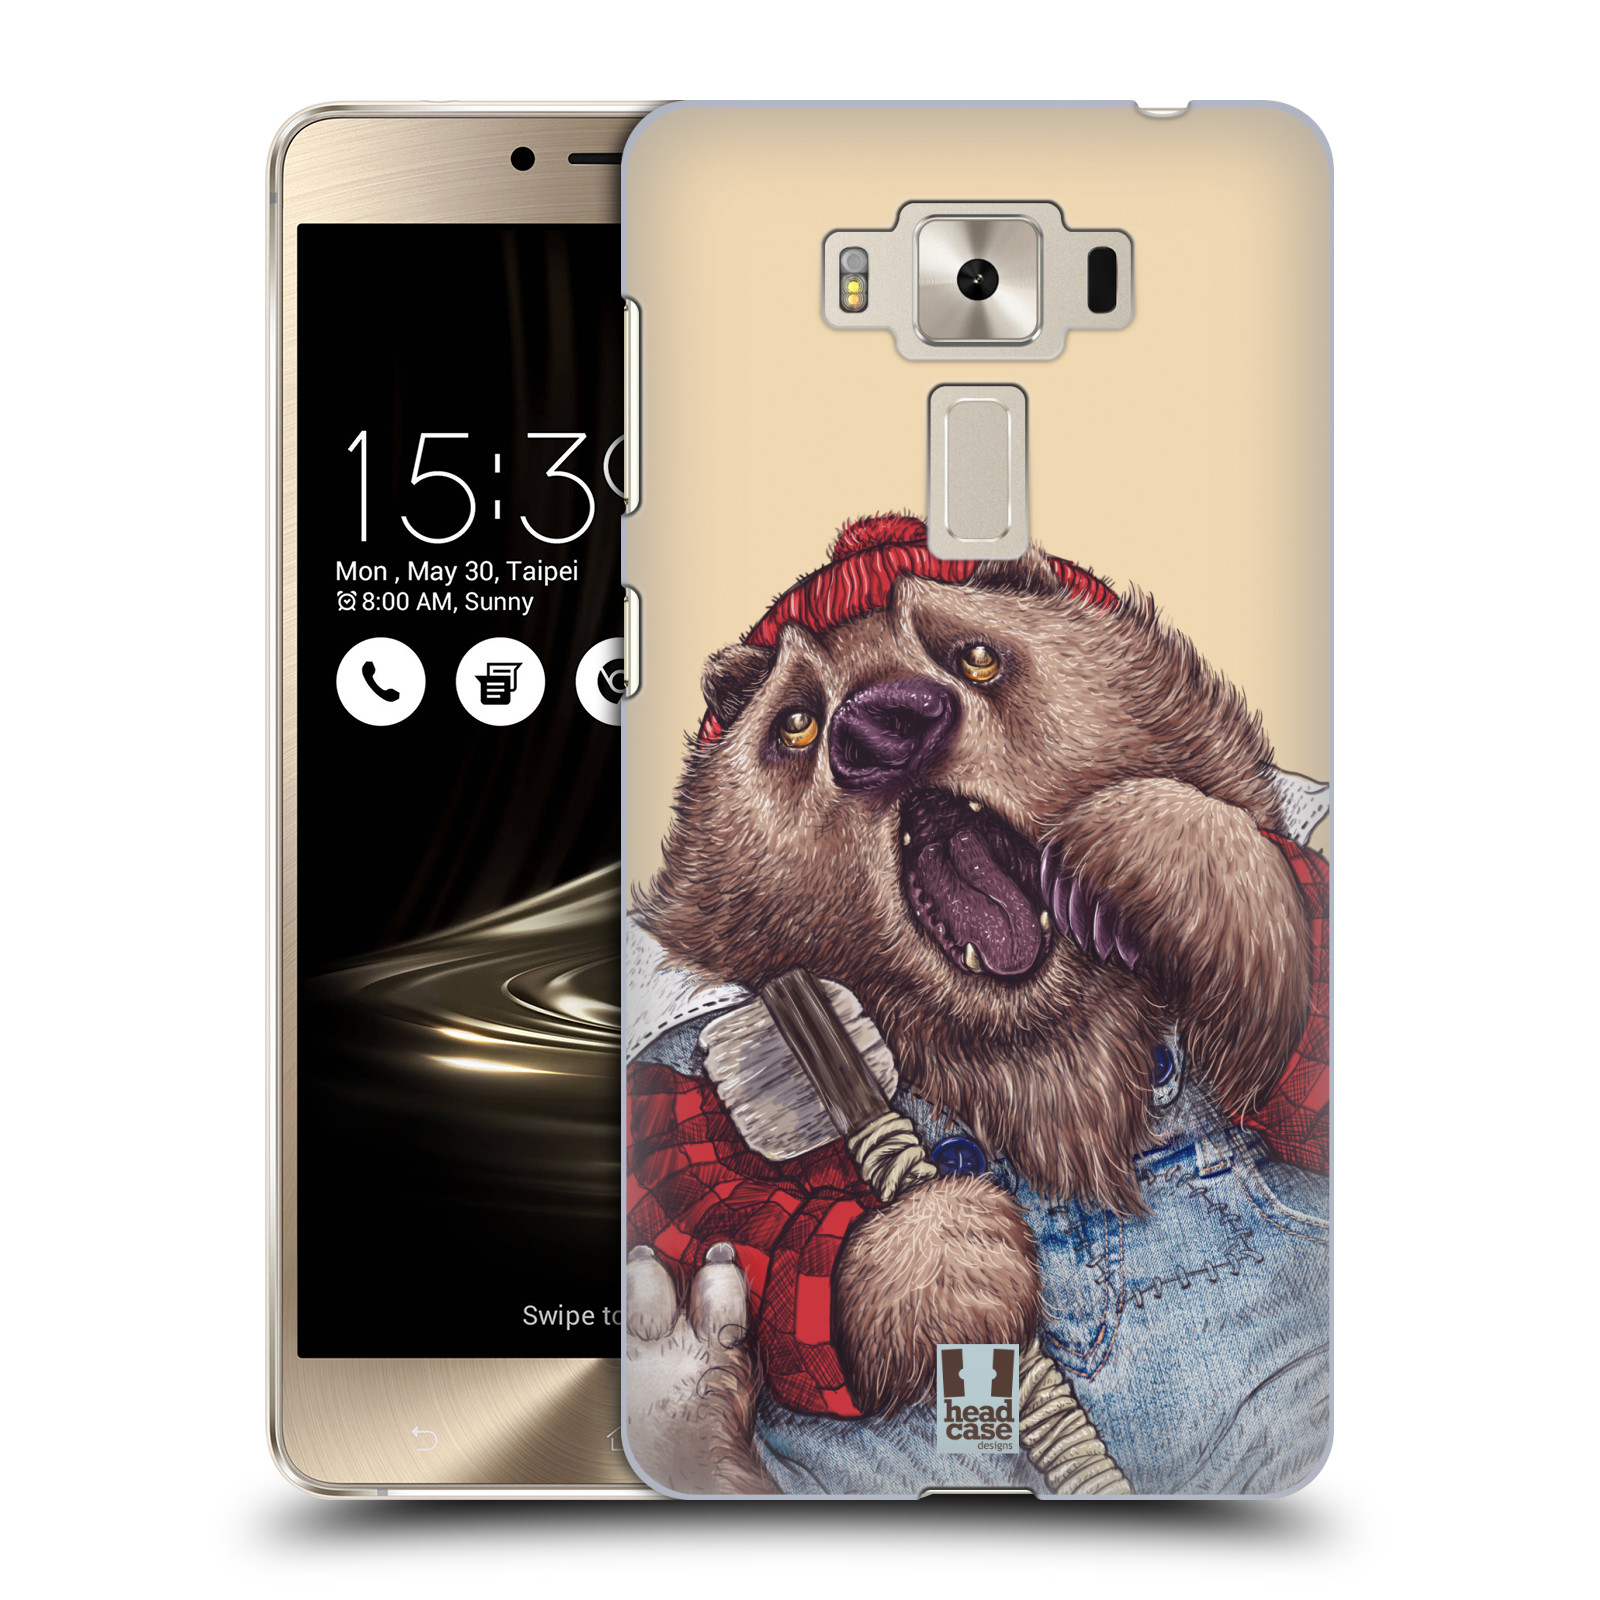 HEAD CASE plastový obal na mobil Asus Zenfone 3 DELUXE ZS550KL vzor Kreslená zvířátka medvěd